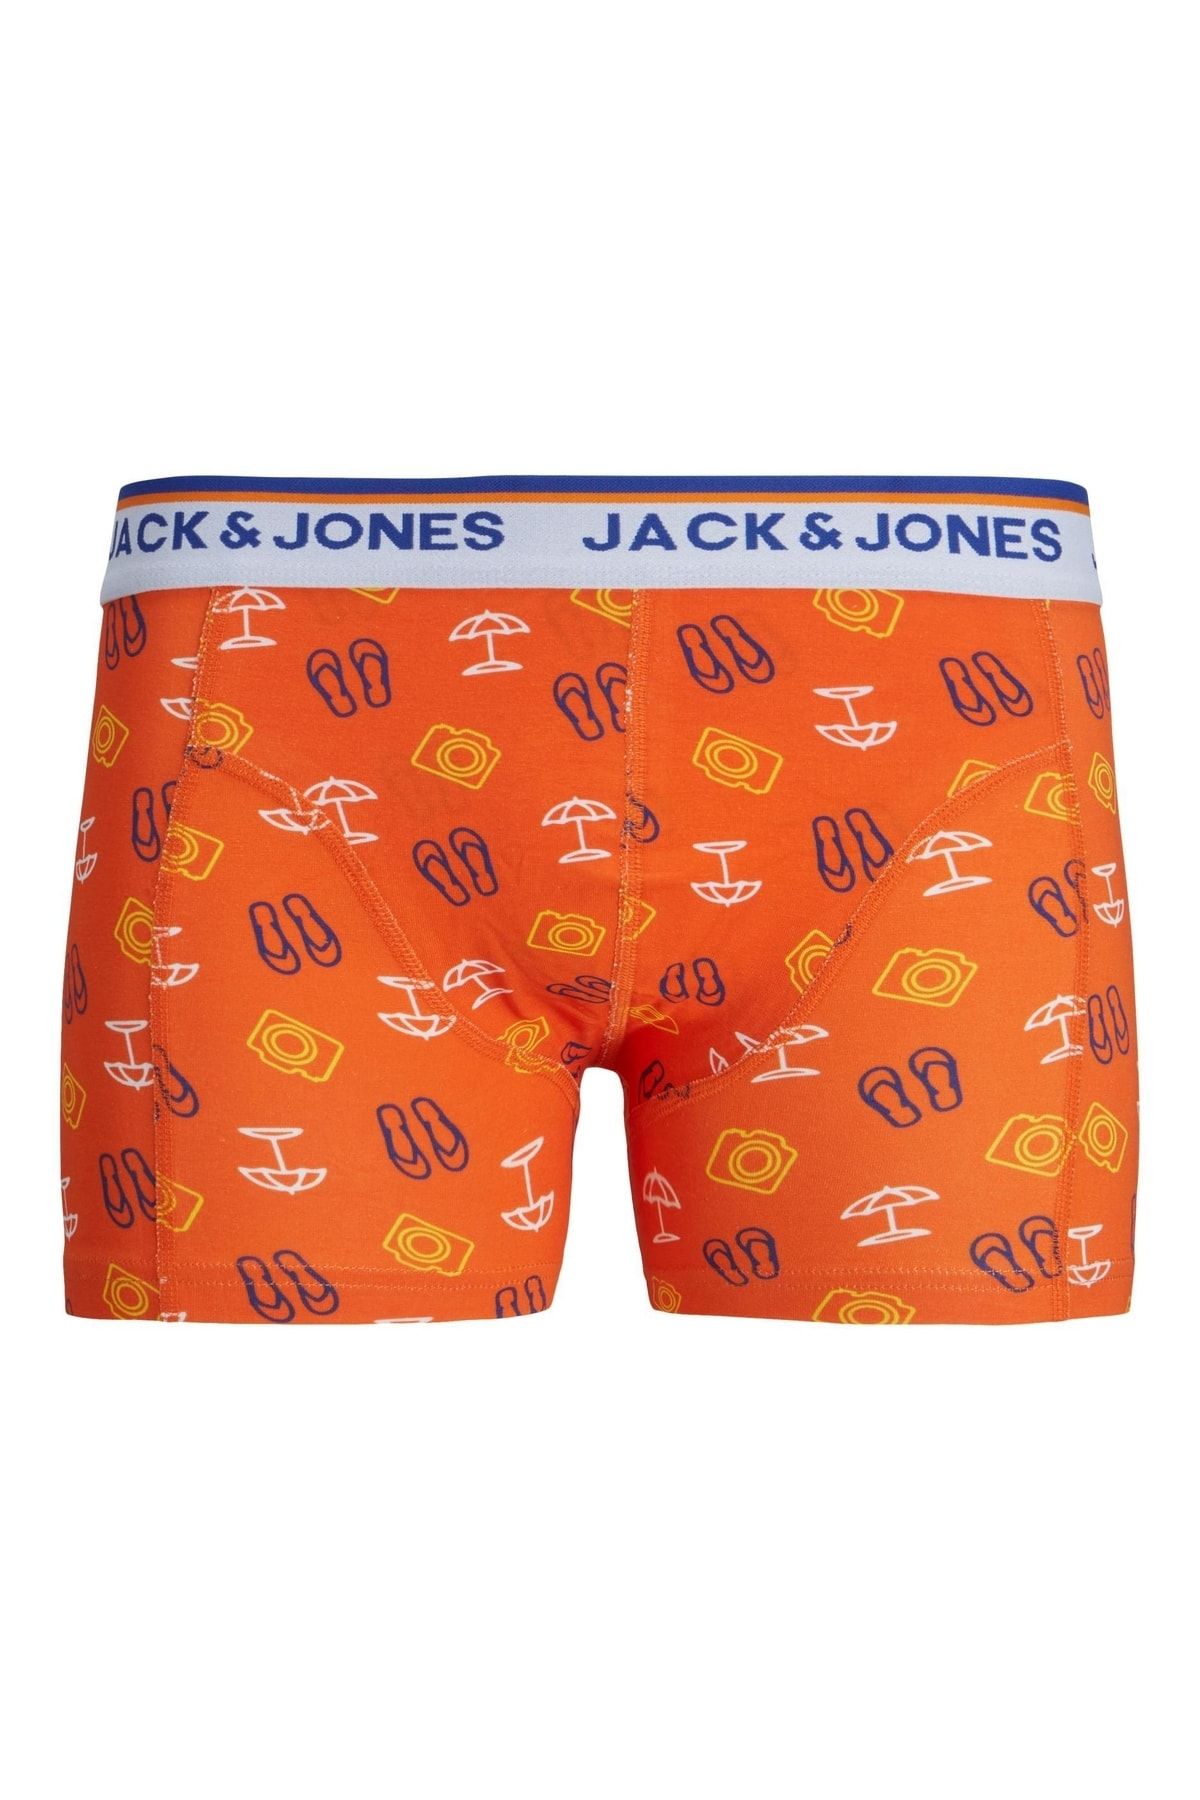 Jack & Jones Jack Jones Weston Neon Trunk Sn Erkek Turuncu Boxer 12214581-23